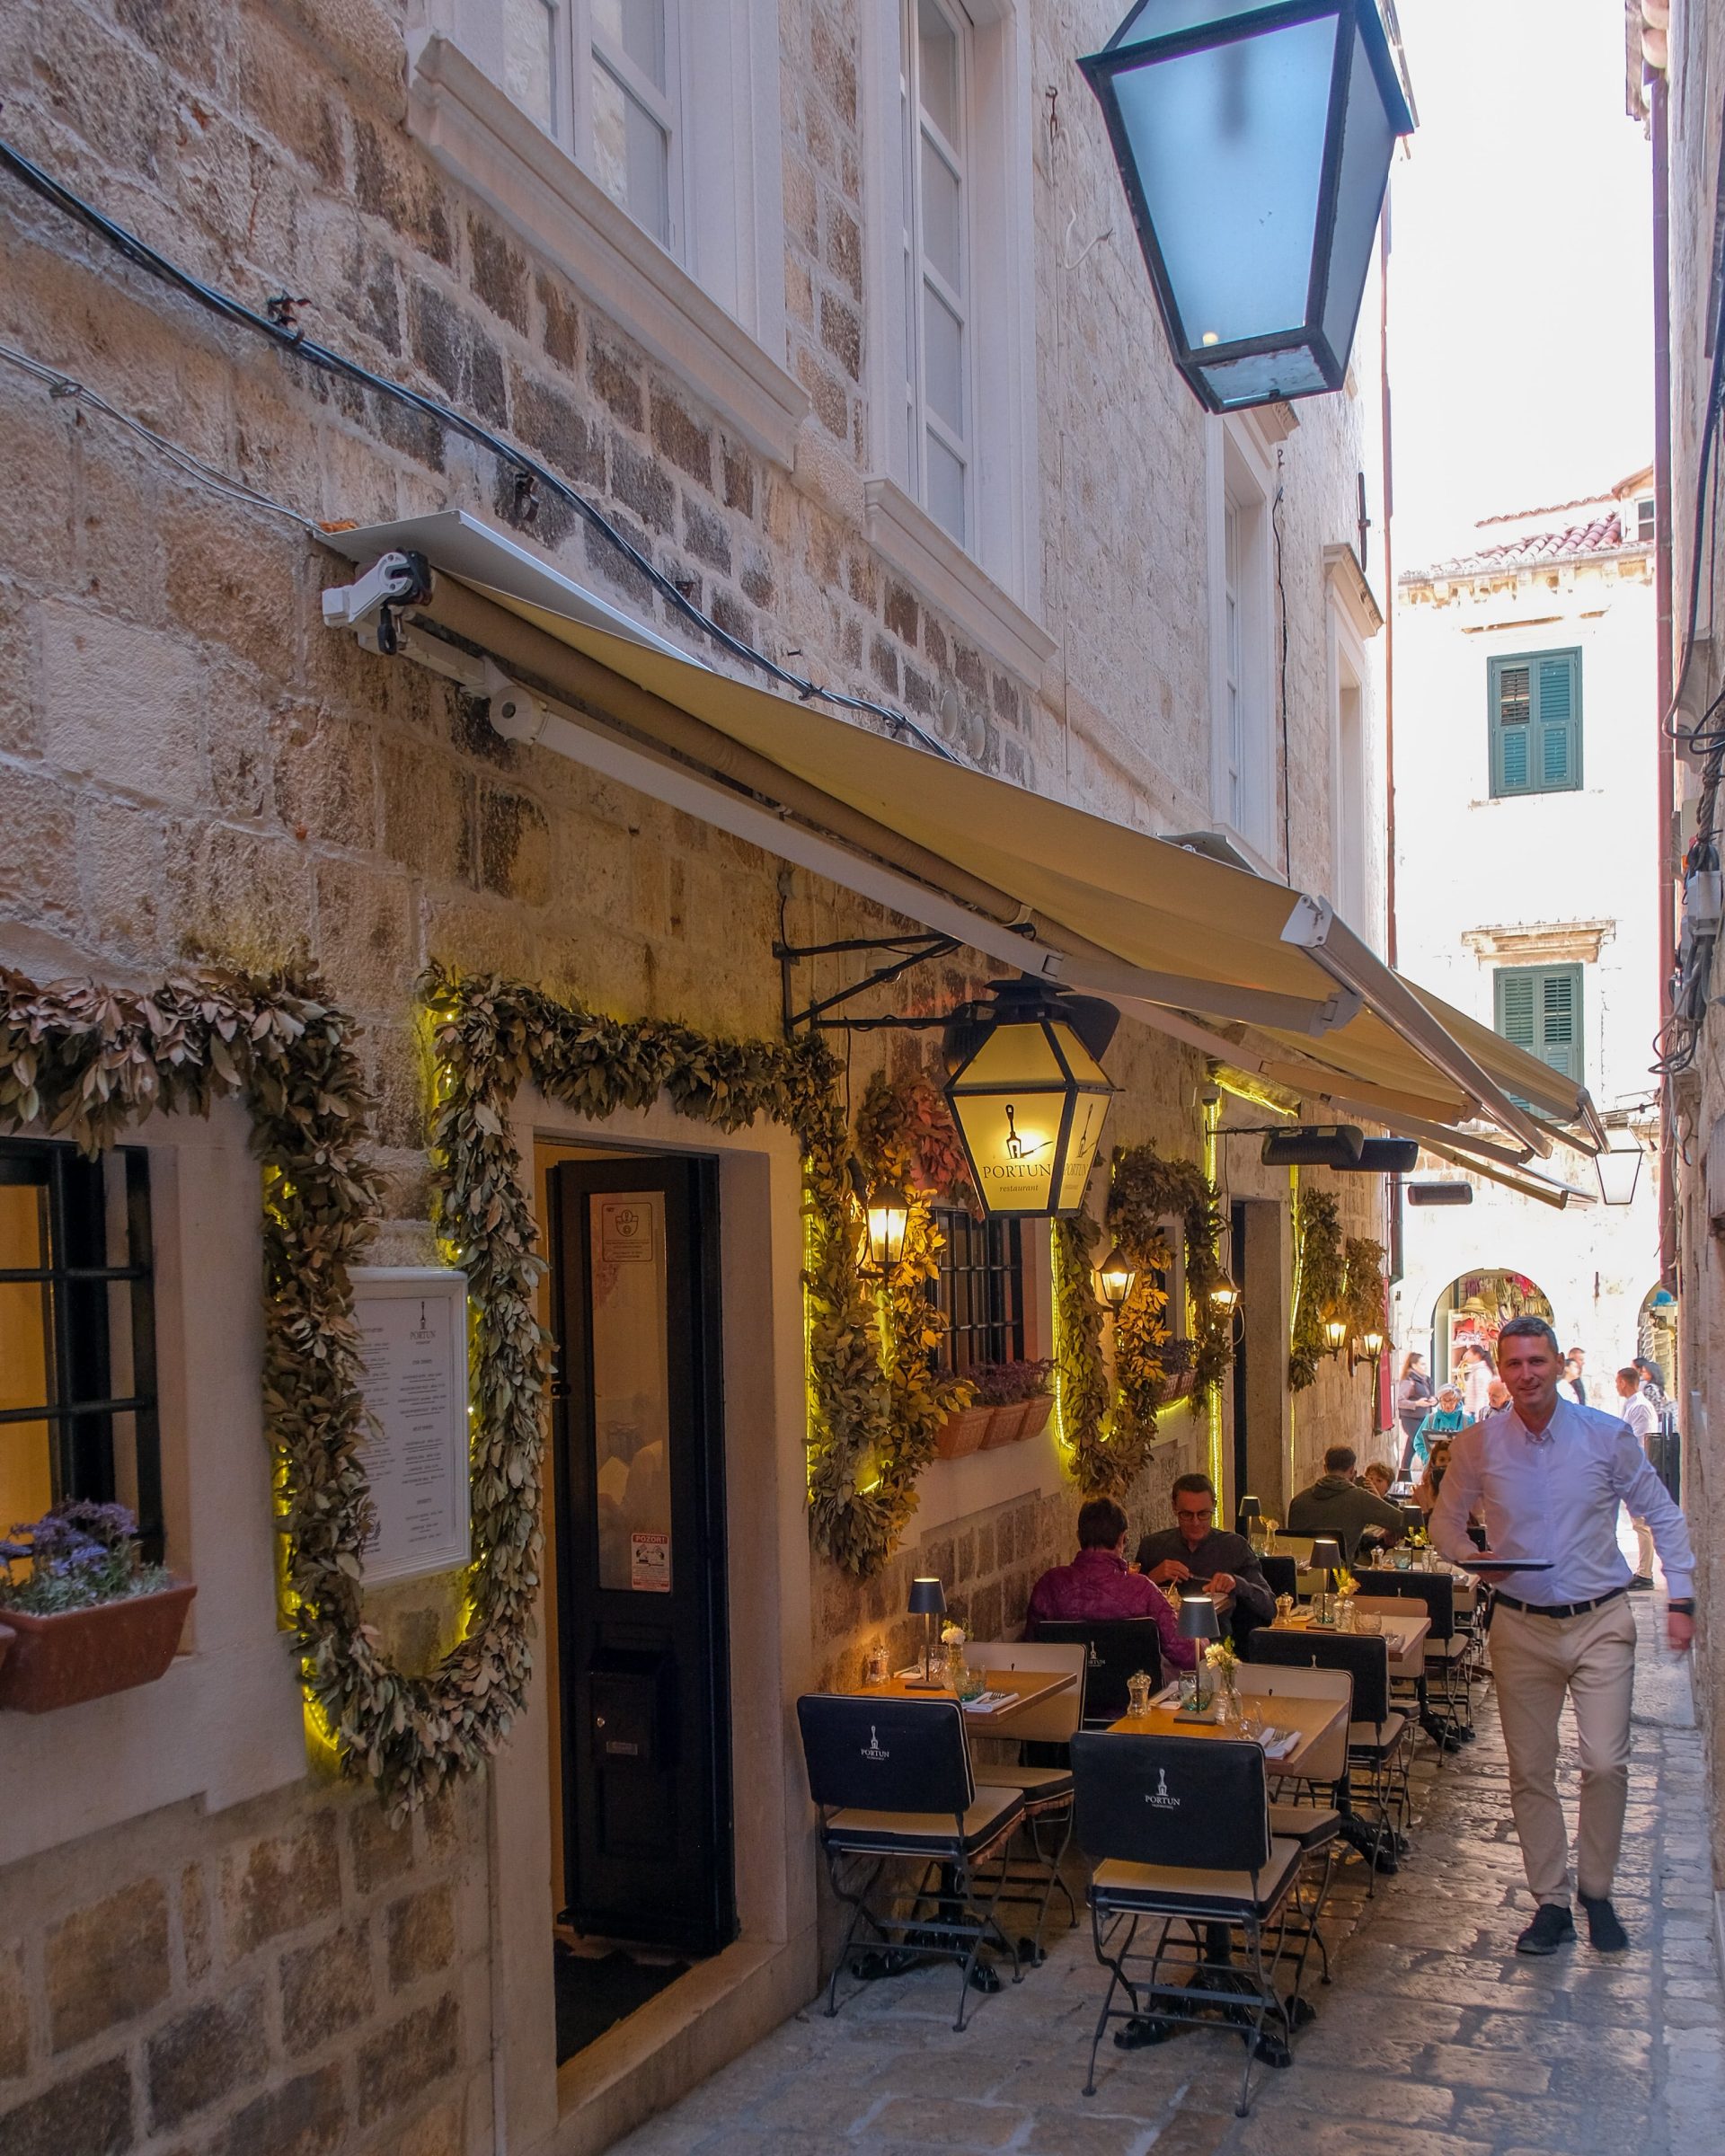 Knus familierestaurant | Lekker eten in Dubrovnik